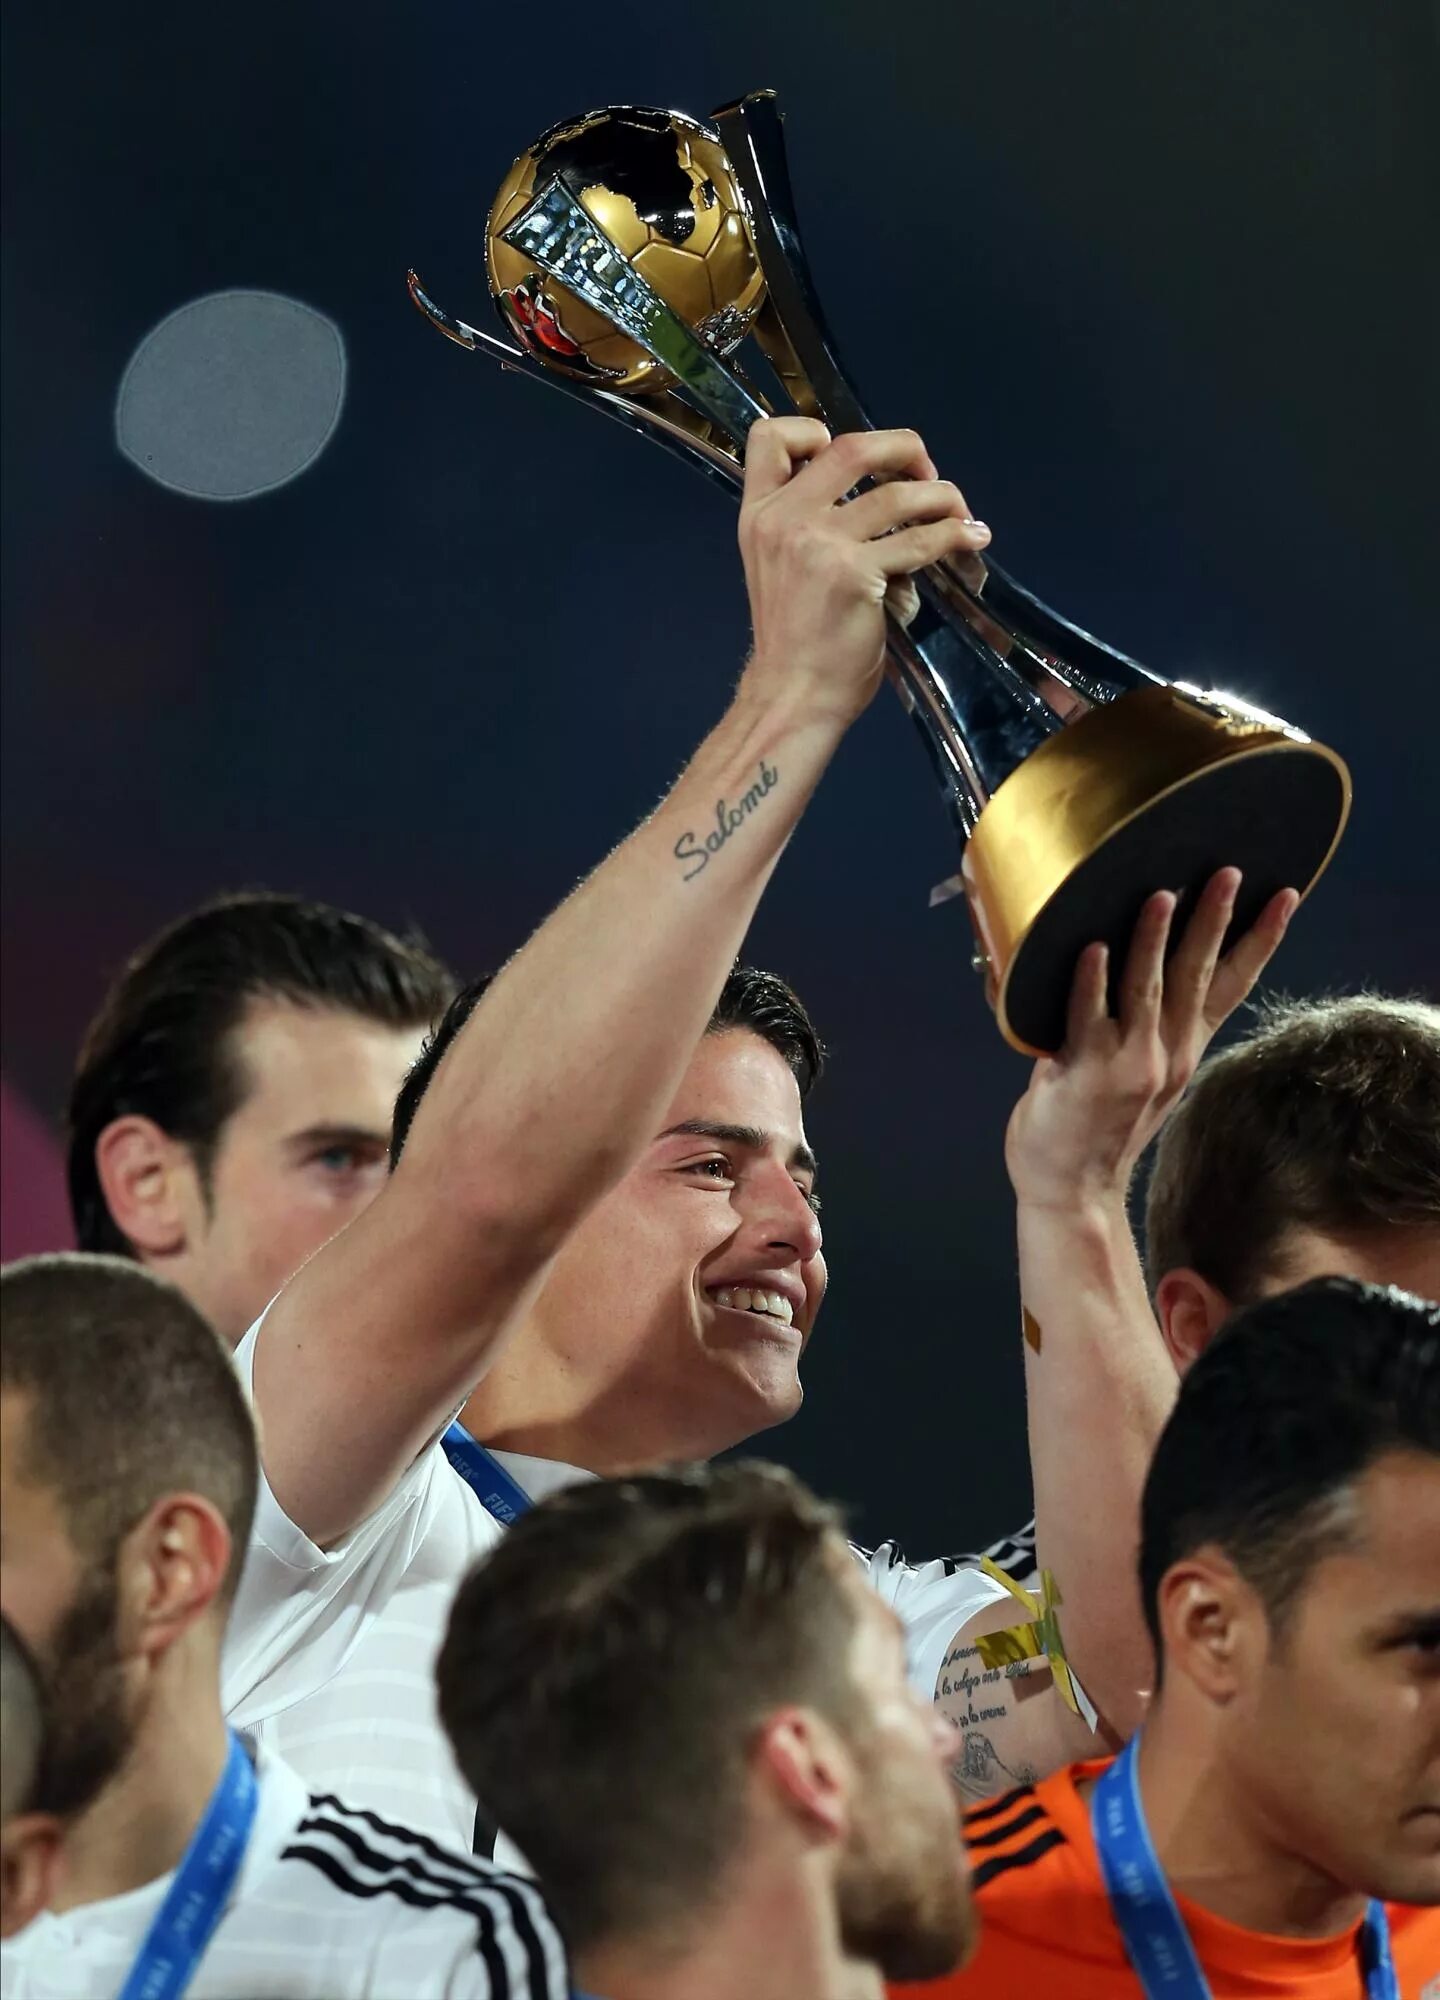 Хамес Родригес с Кубком. Хамес Родригес трофей см 2014. Фото футбол кубок